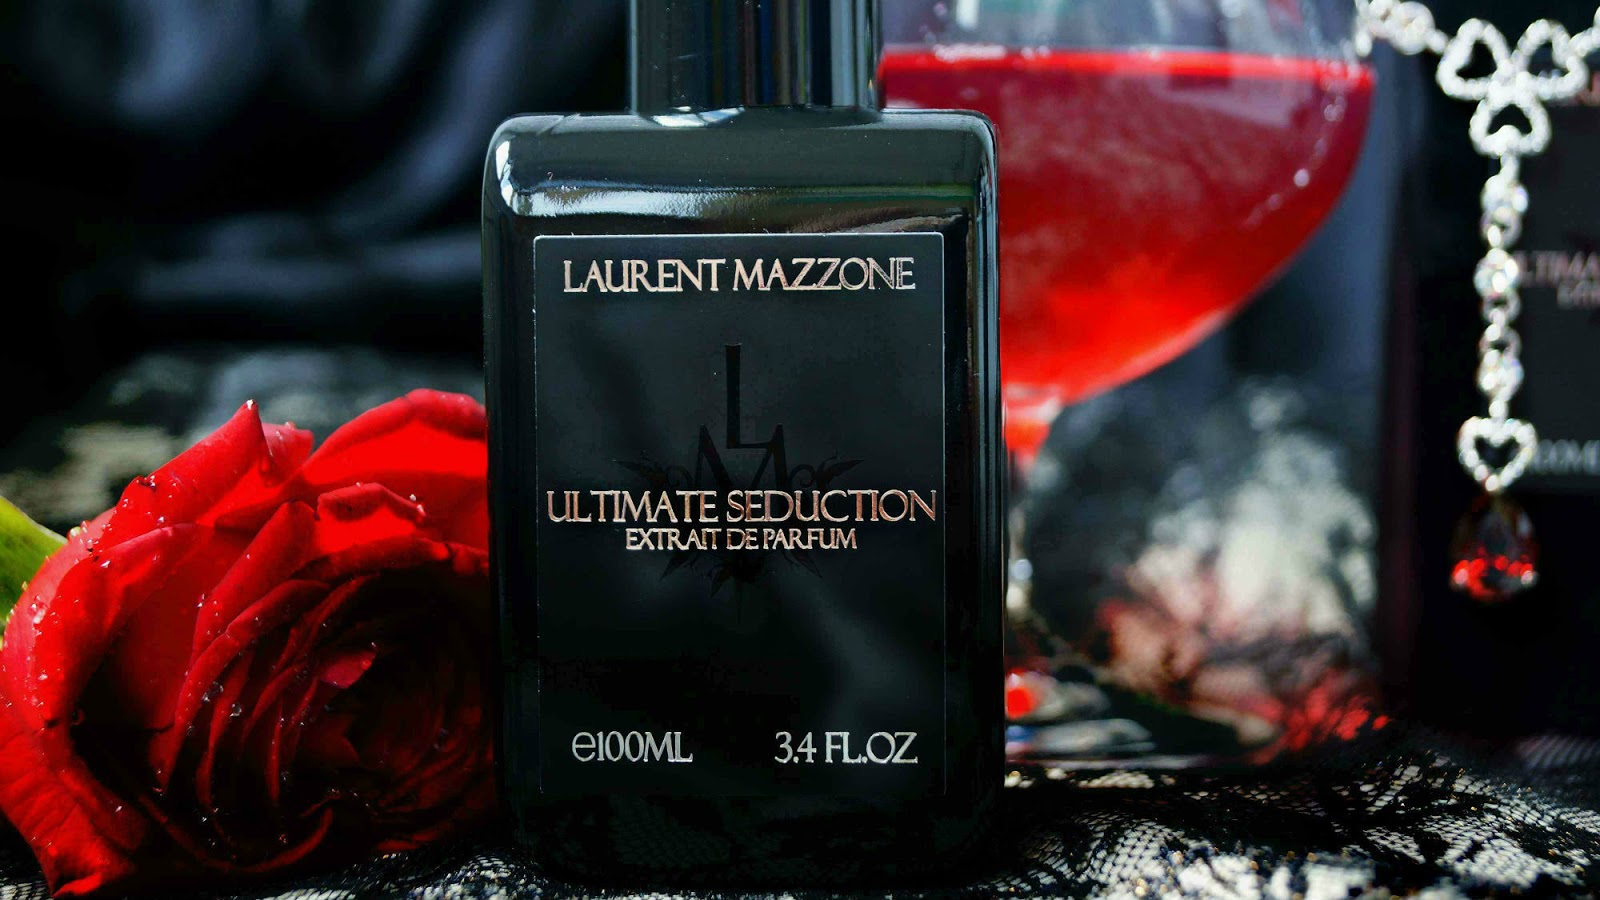 Dulce pear laurent. LM Parfums Ultimate Seduction. Laurent Mazzone Ultimate Seduction. Парфюм Laurent Mazzone. LM Parfums (Laurent Mazzone Parfums) Dulce Pear.